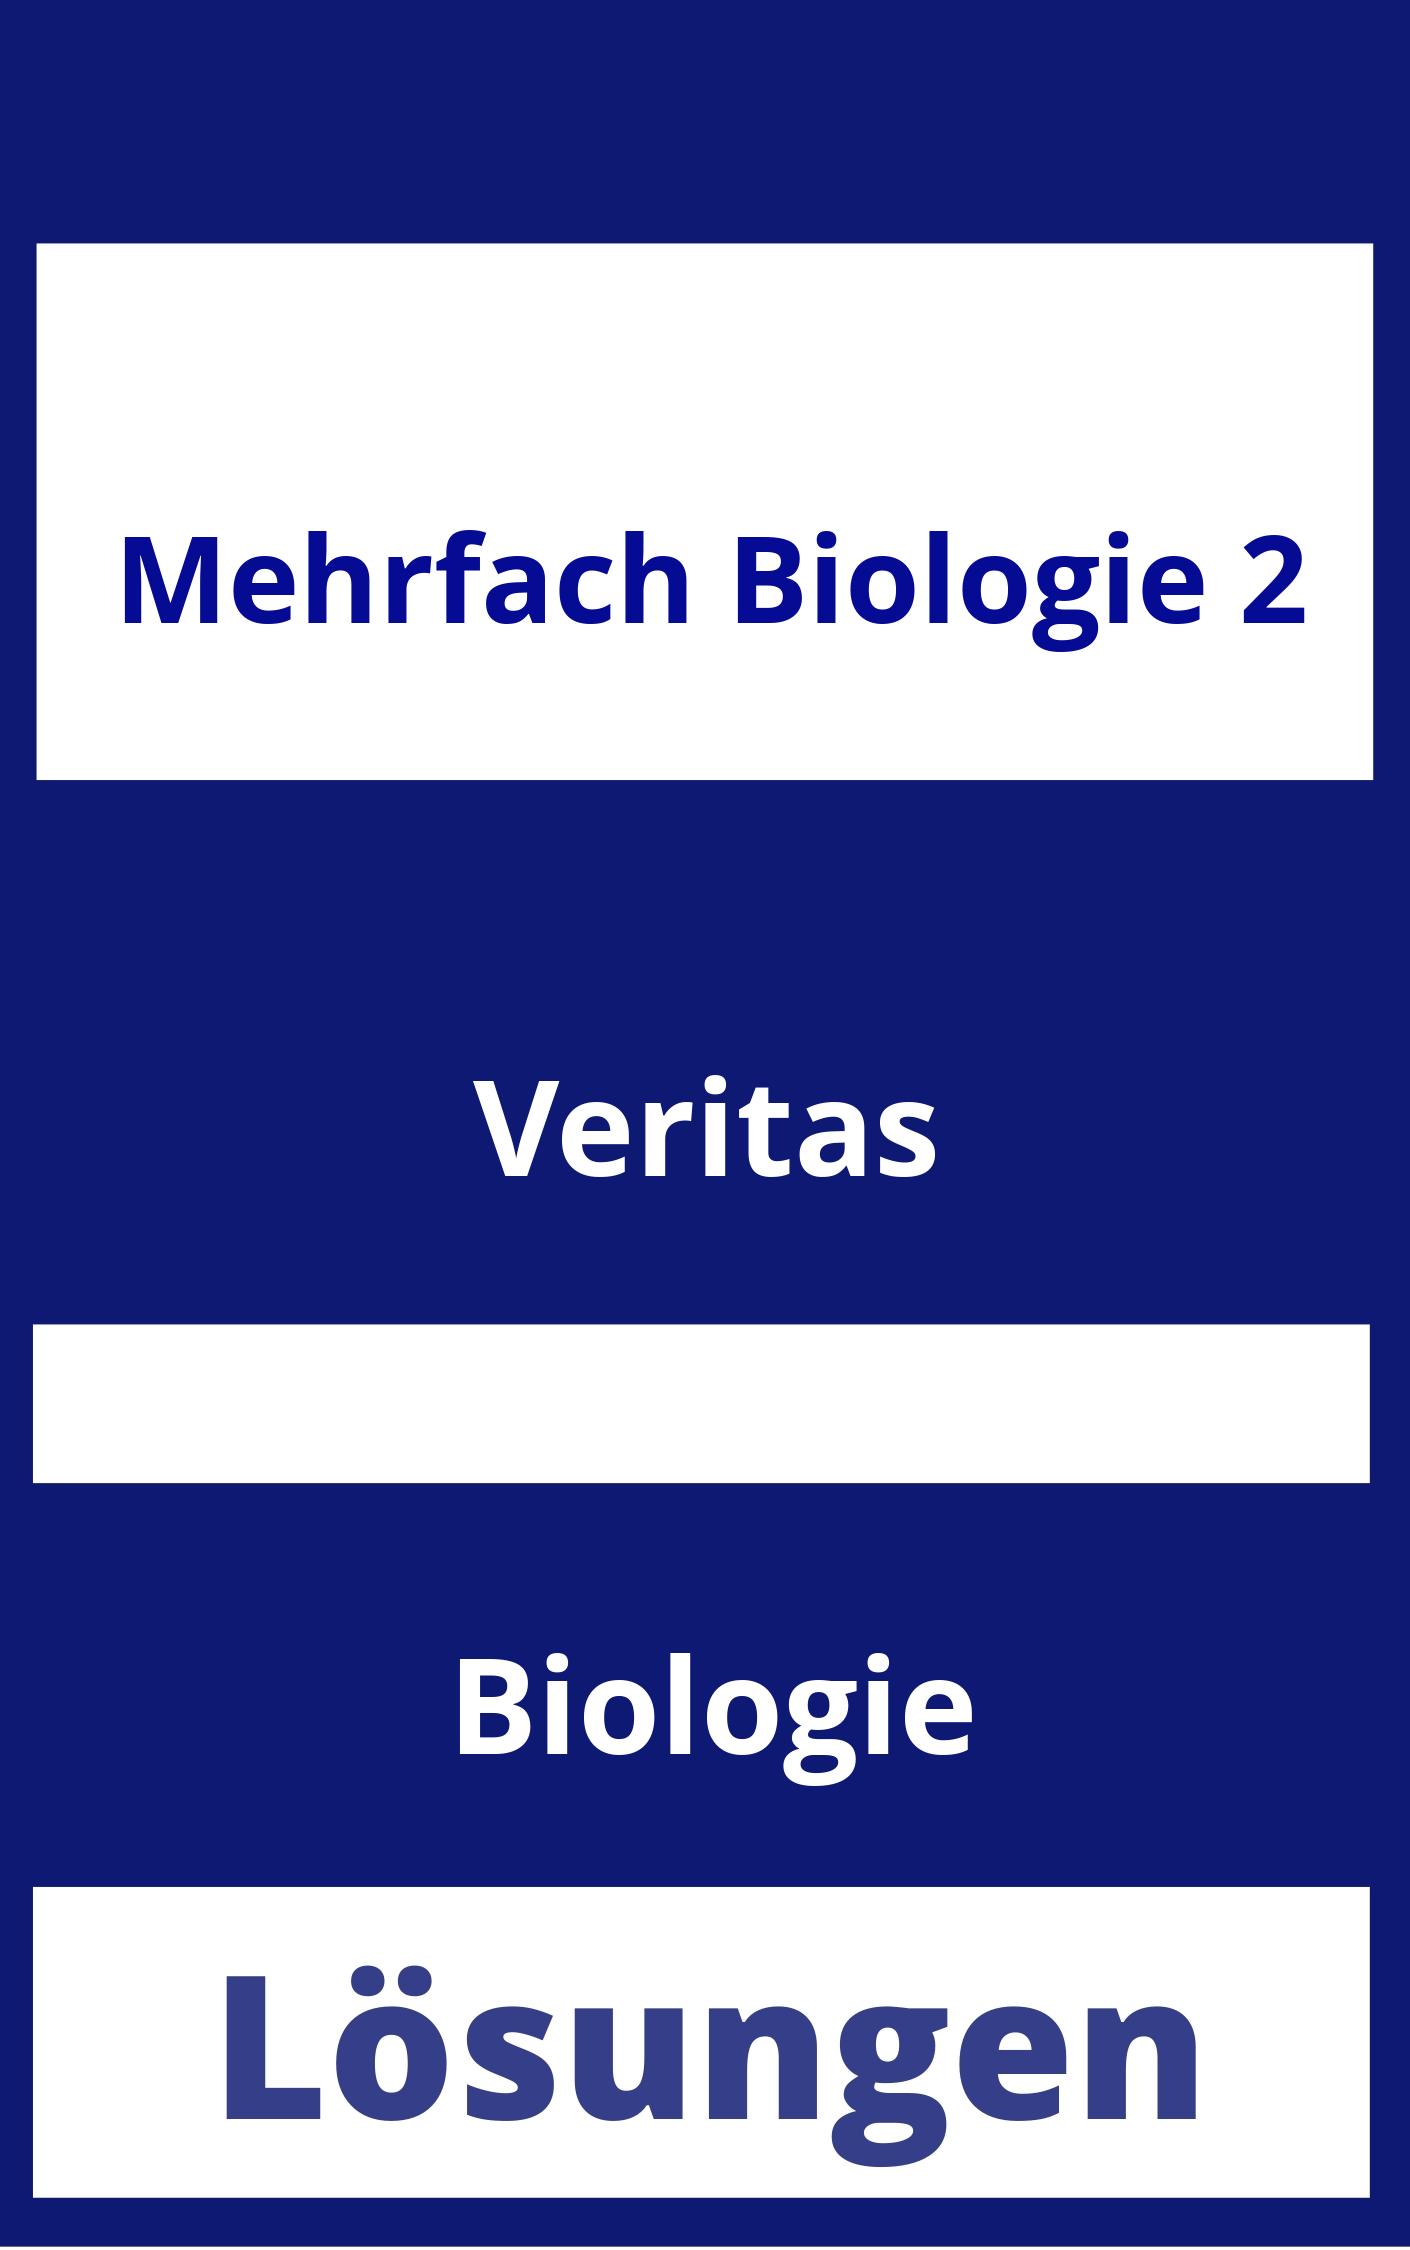 MEHRfach Biologie 2 Lösungen PDF